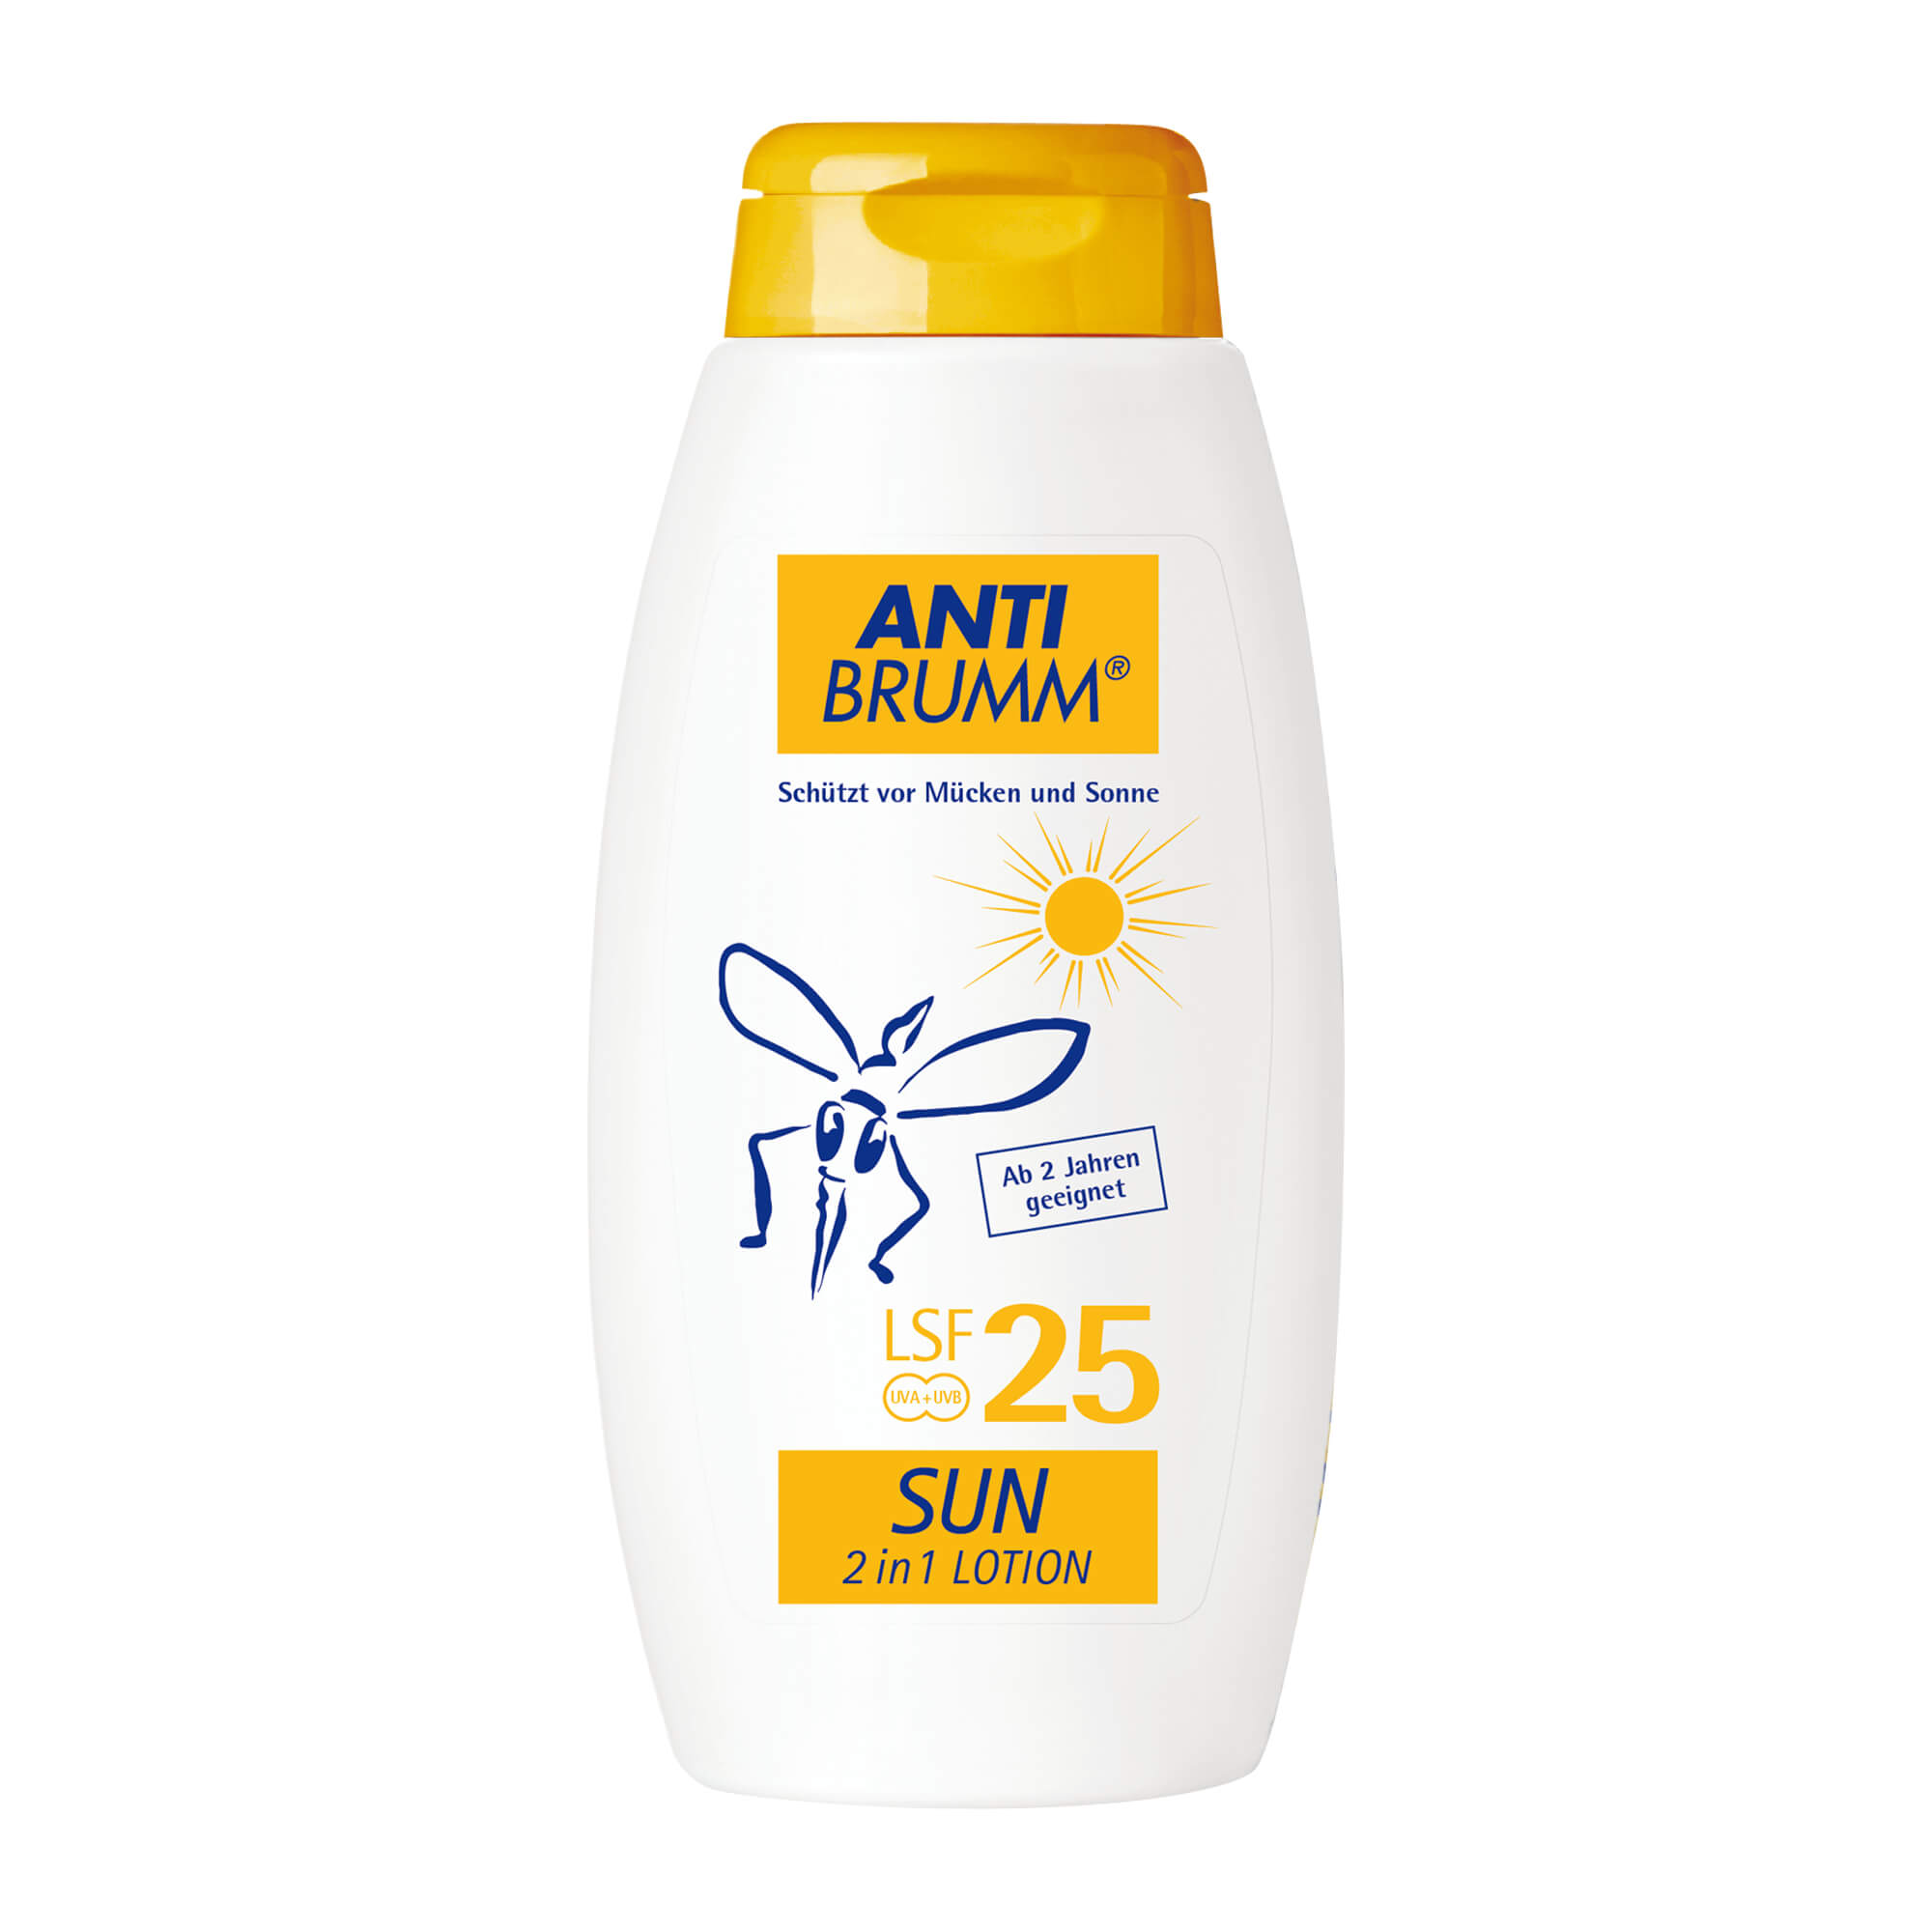 Der innovative Schutz gegen Mücken und Sonne.